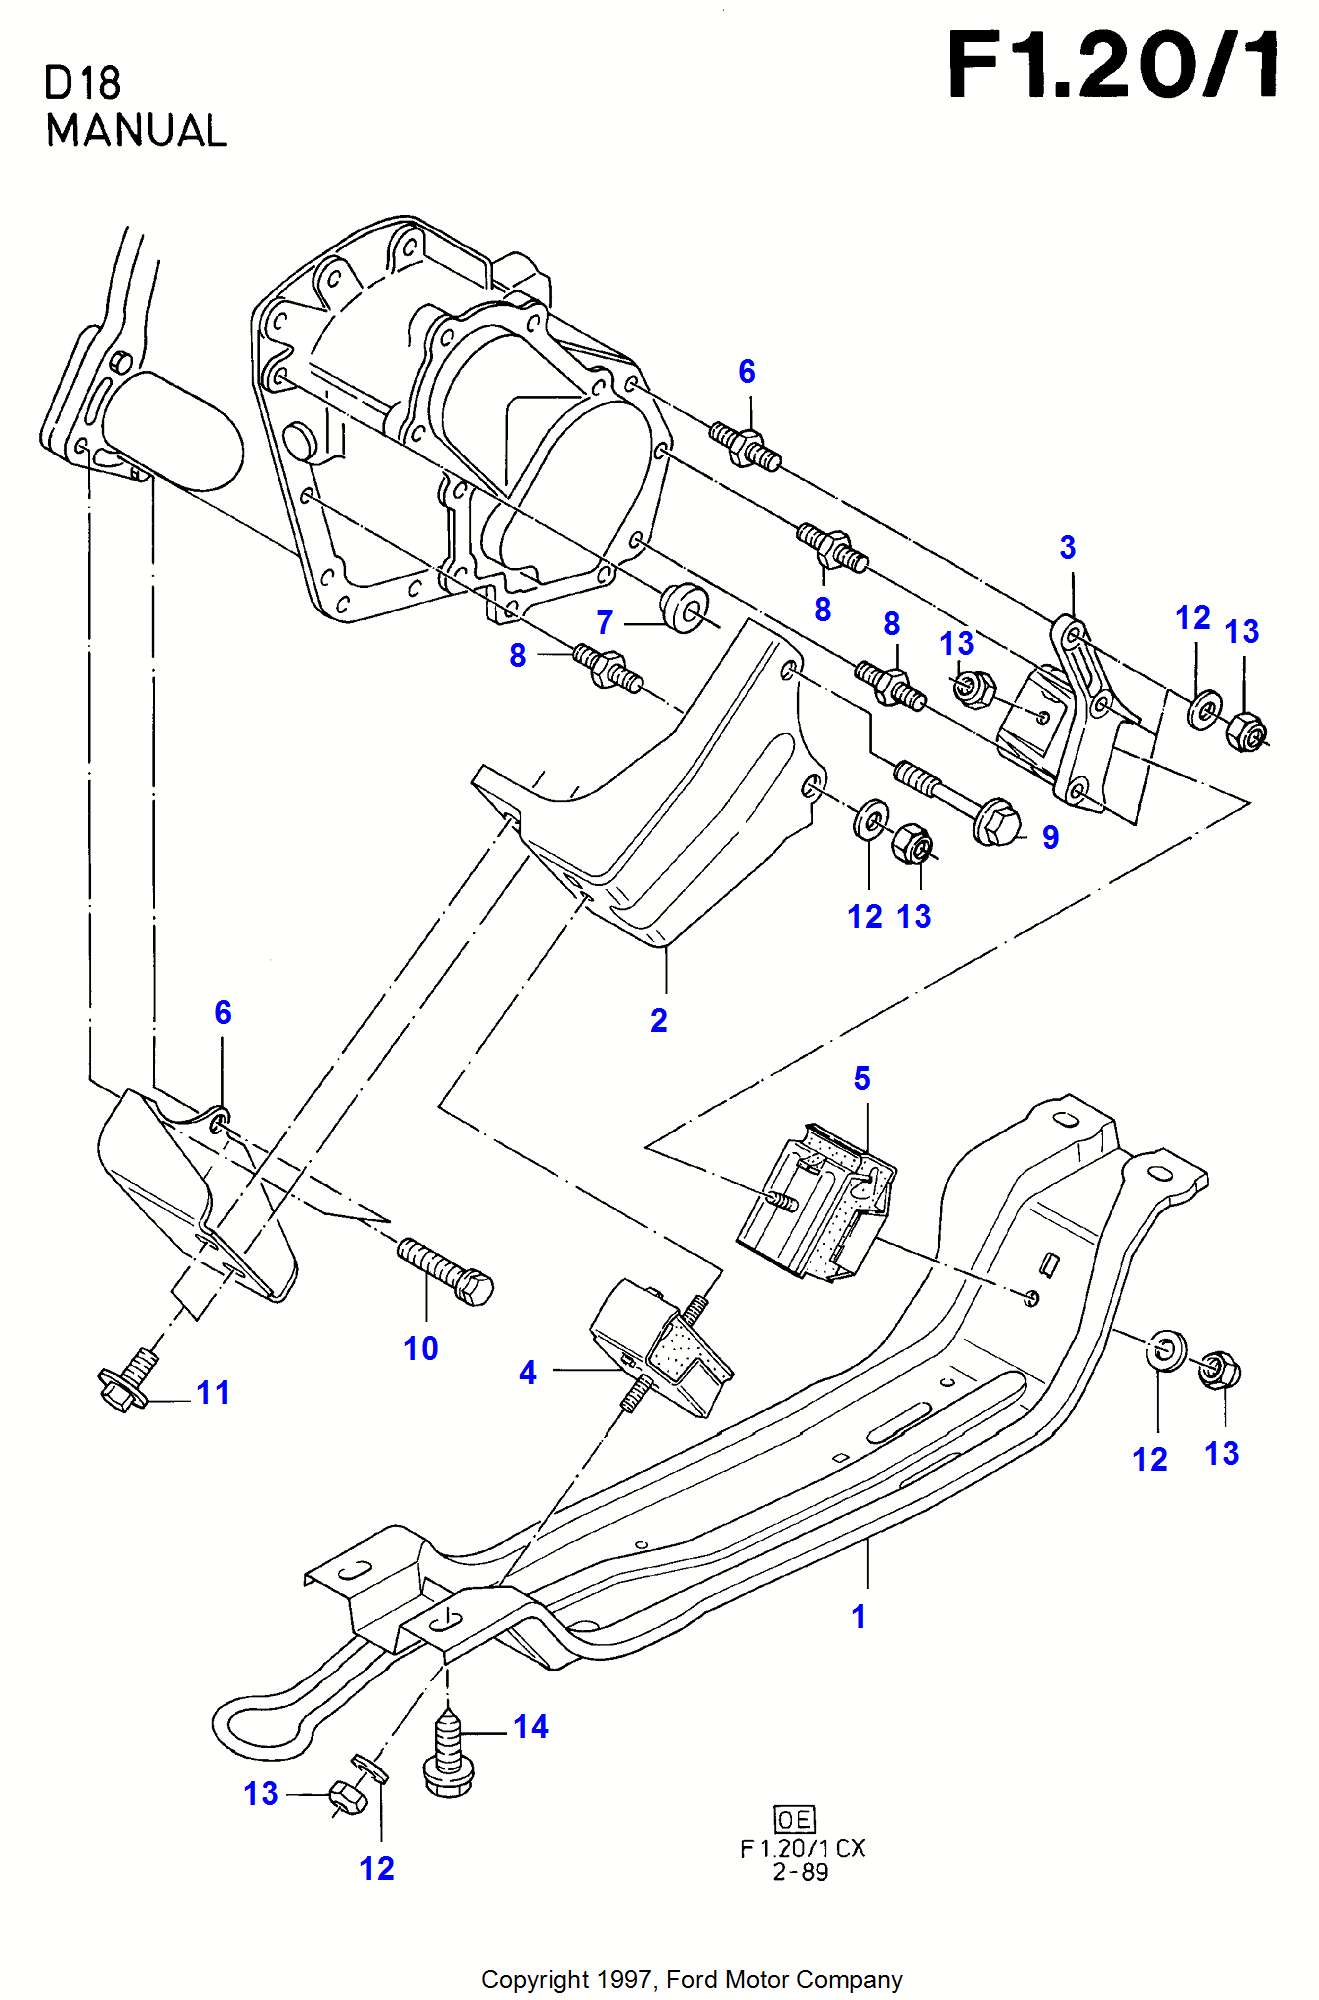 Engine And Transmission Suspension для Ford Fiesta Fiesta 1989-1996               (CX)